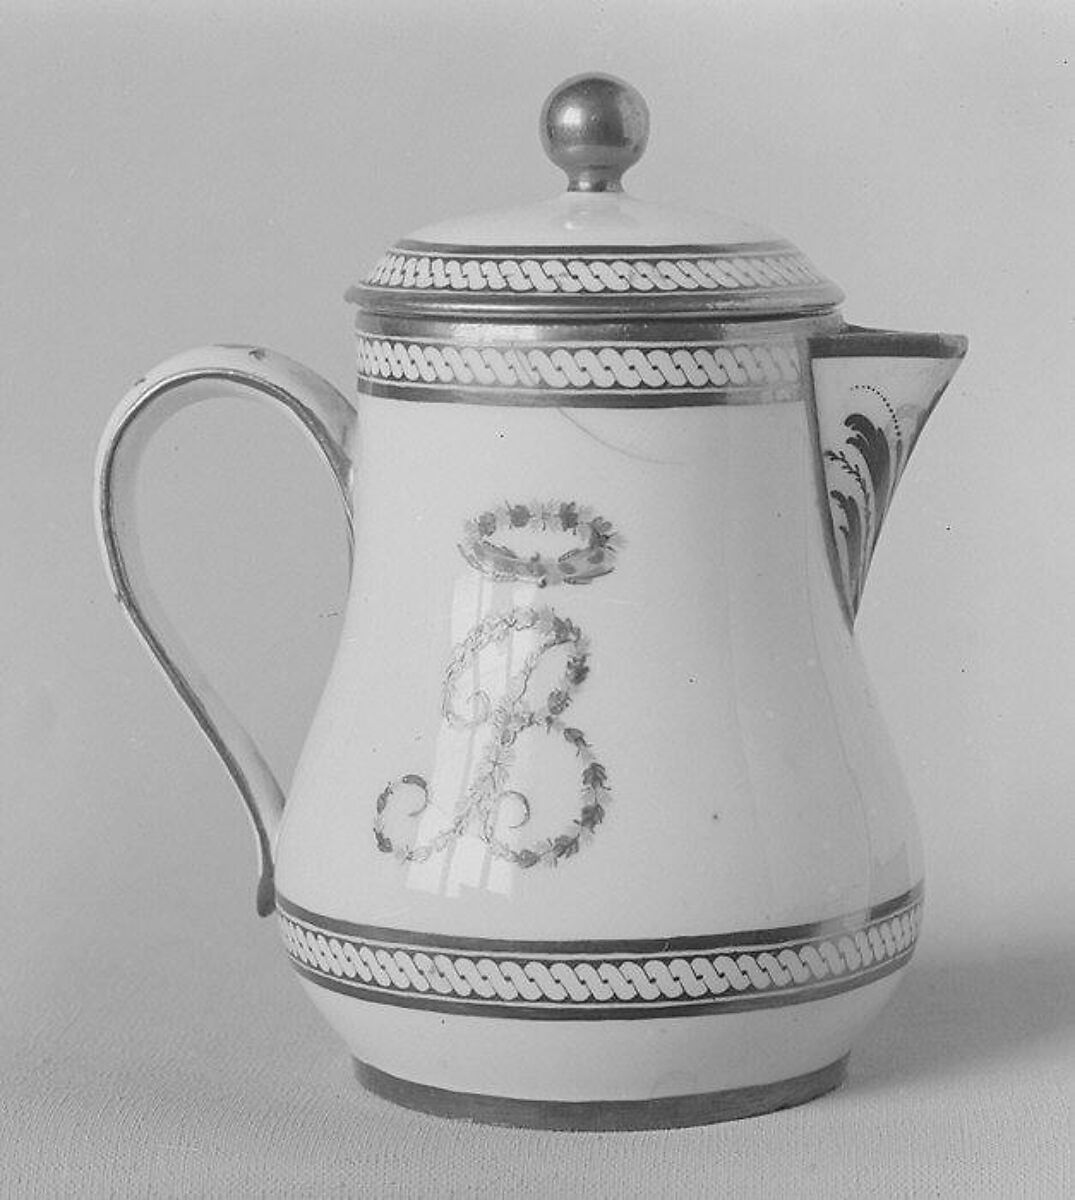 Milk jug with cover (part of a traveling tea service), Dihl et Guérhard (French, 1781–ca. 1824) (Manufacture de Monsieur Le Duc d’Angoulême, until 1789), Hard-paste porcelain, French, Paris 